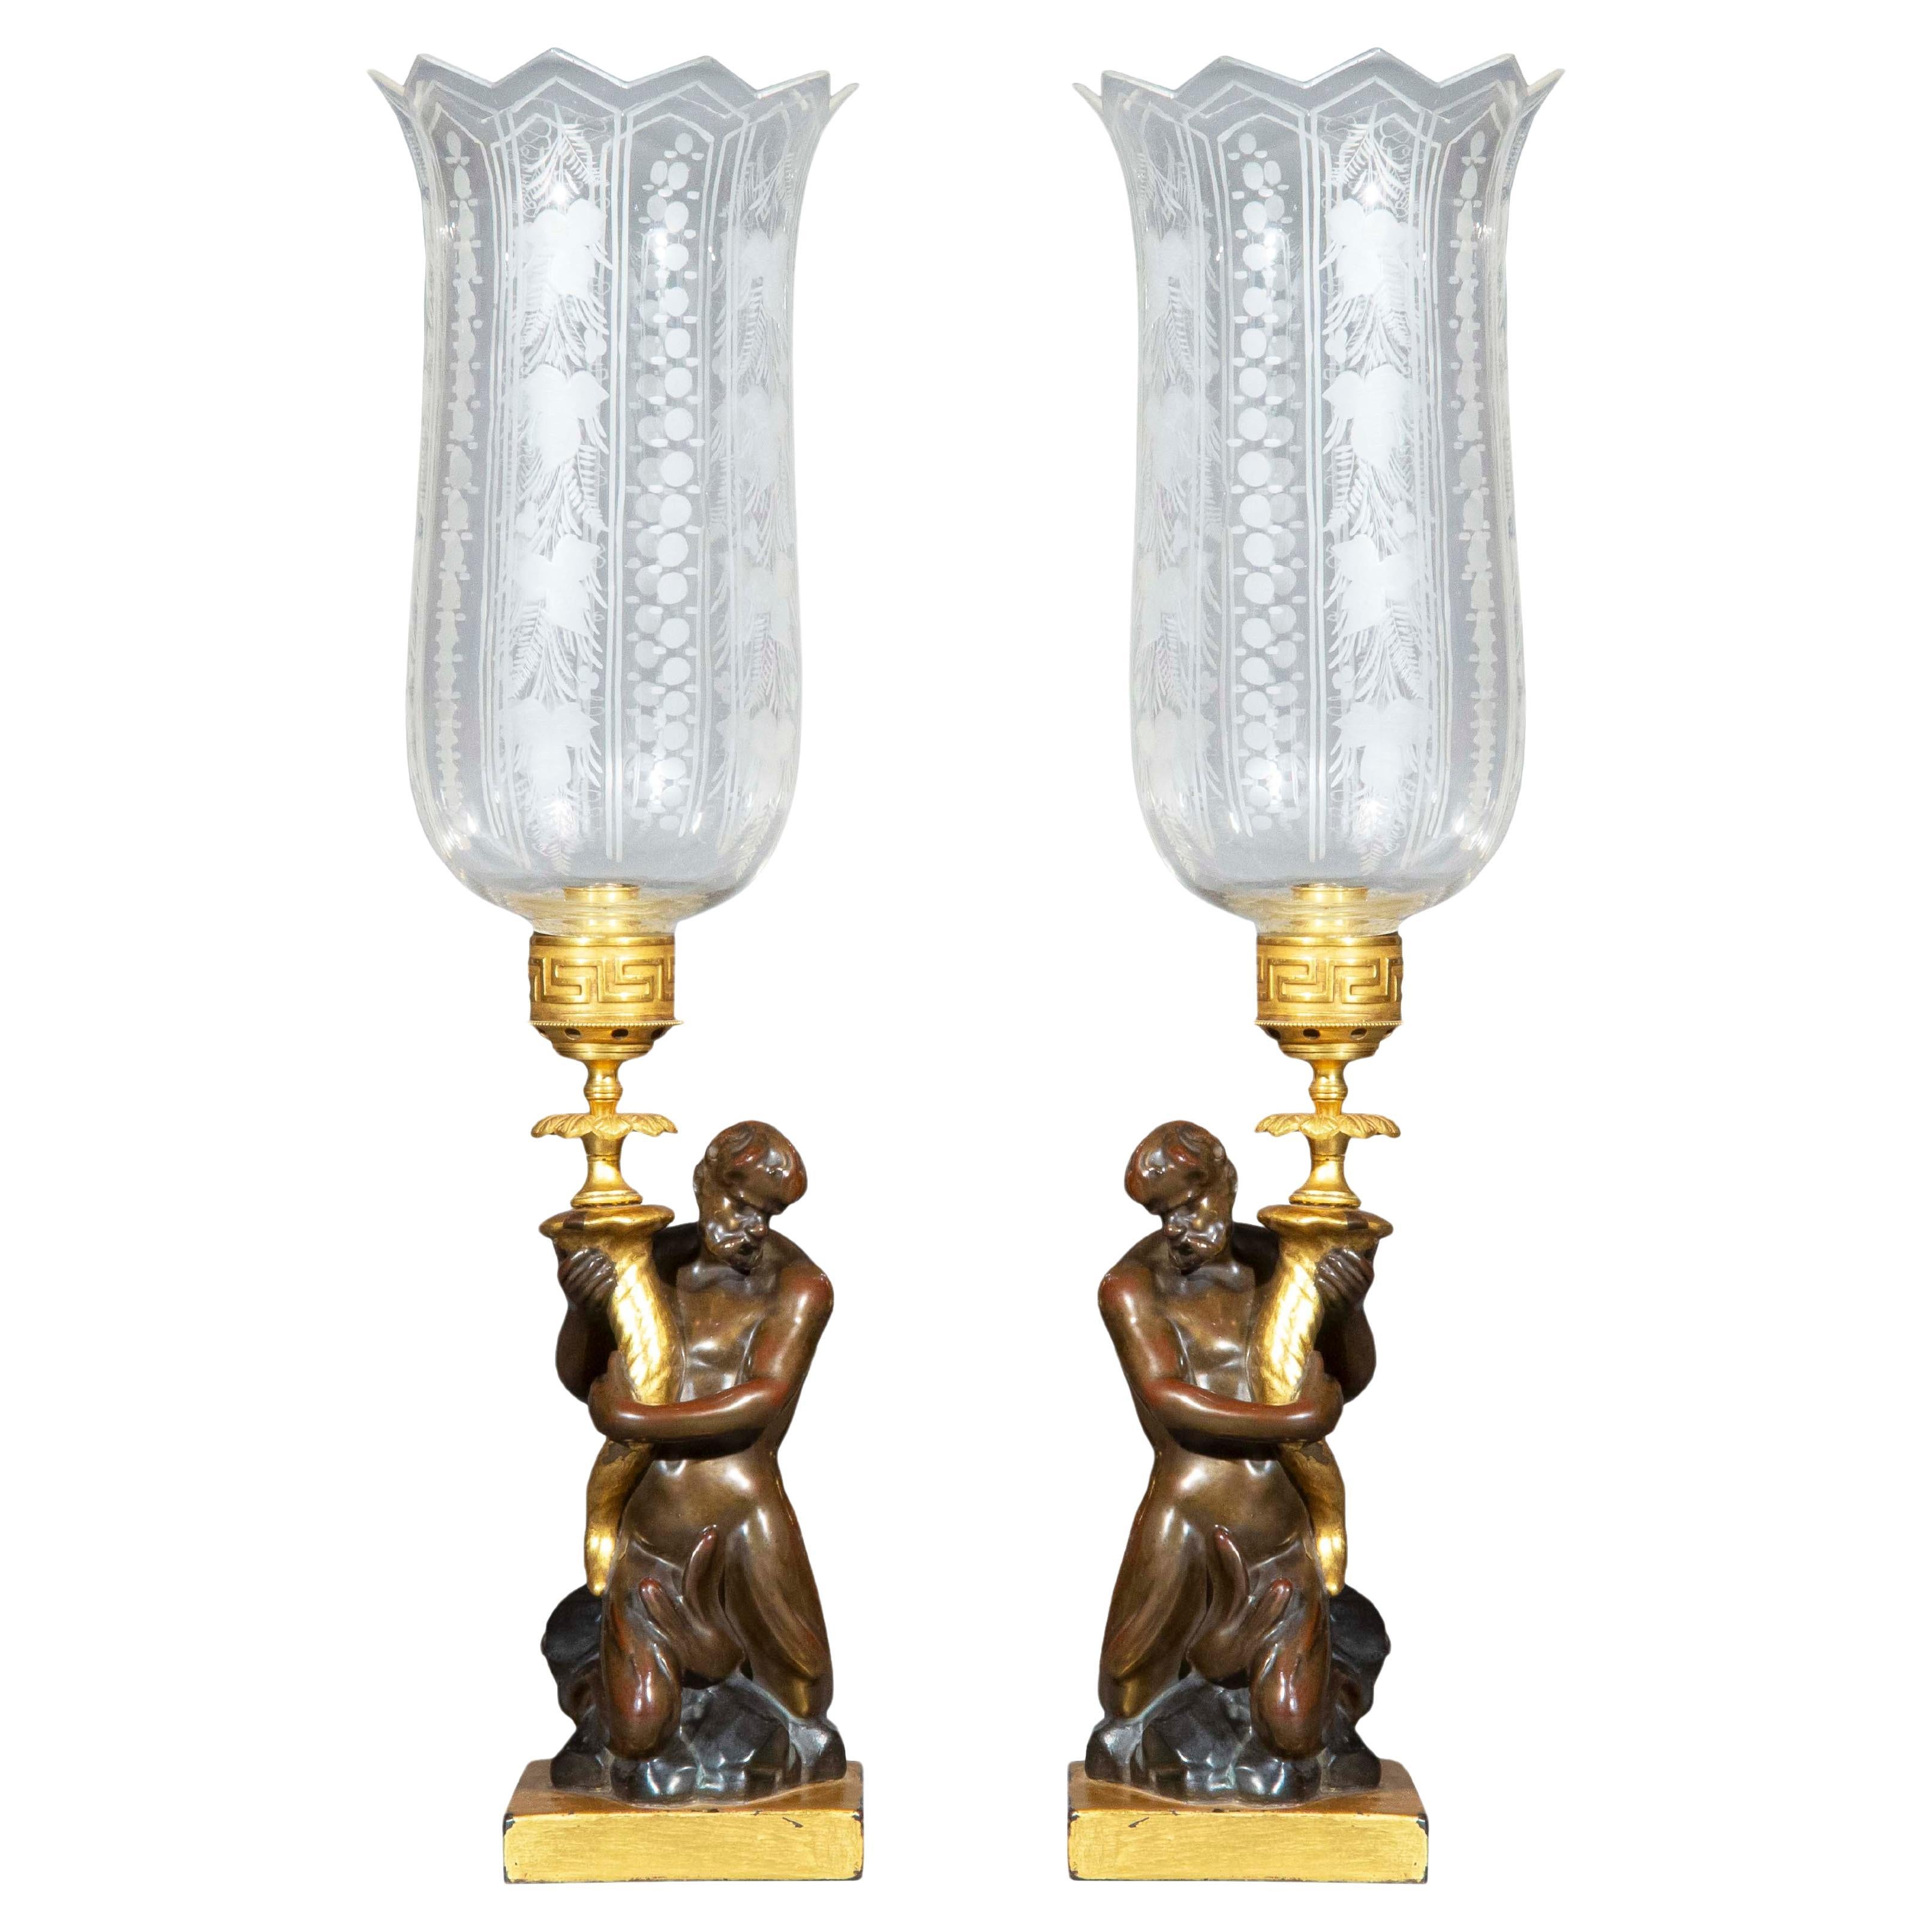 Paire de chandeliers et de lanternes de tempête en Triton du début du 19e siècle par Wood & Caldwell